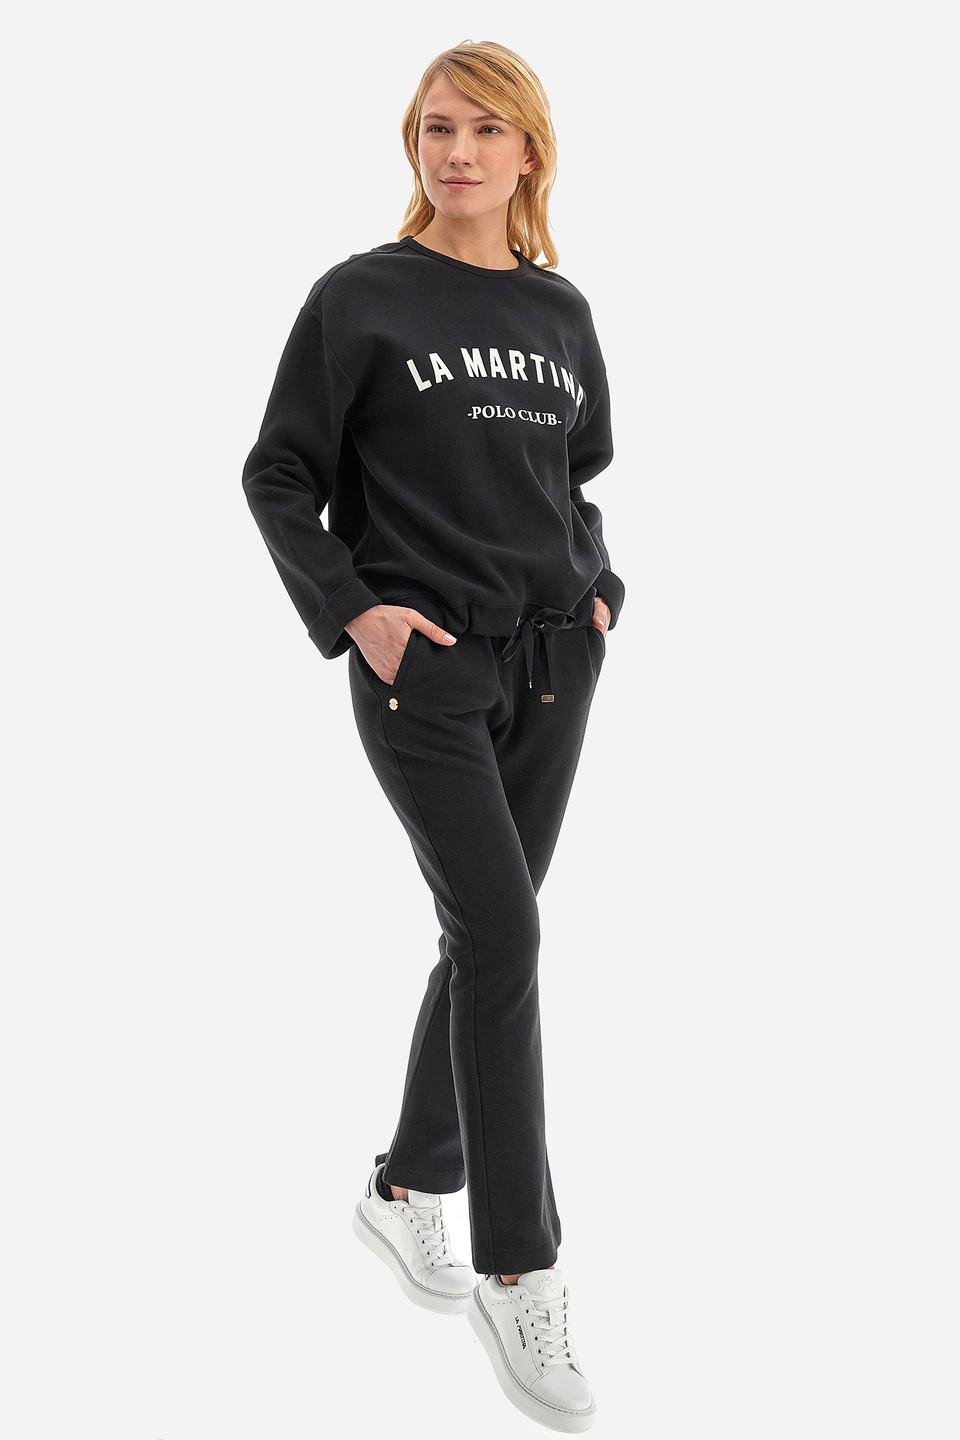 Damen -Sweatshirt regular fit - Wendie | La Martina - Official Online Shop